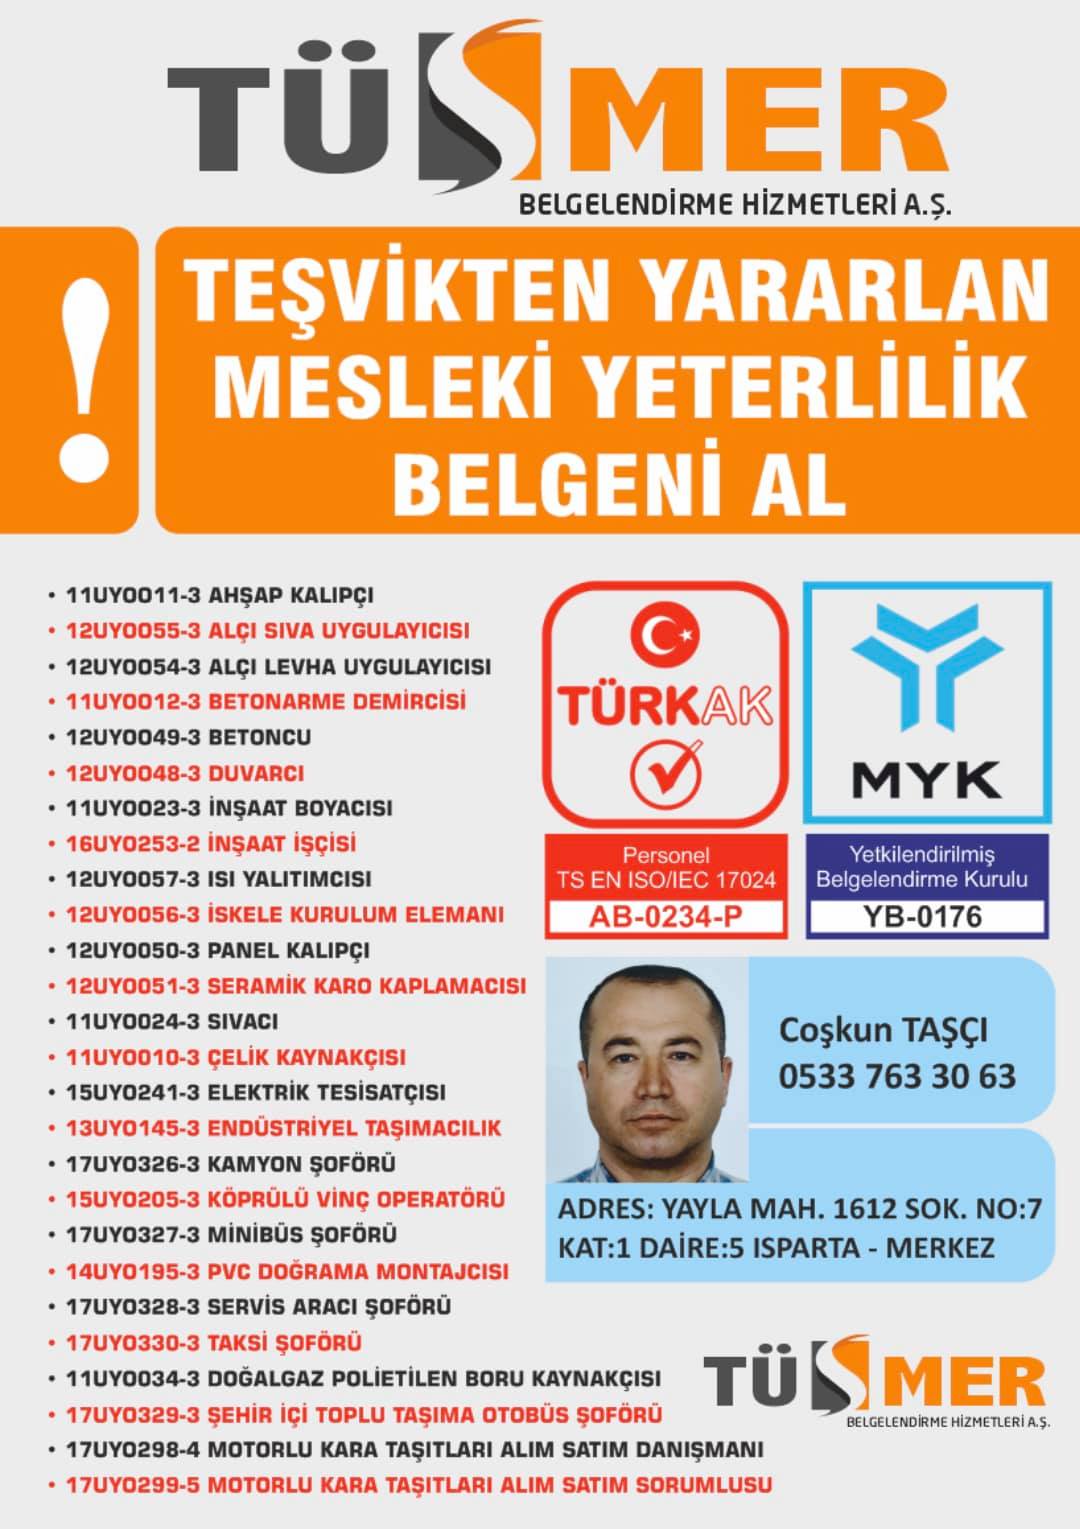 MYK MESLEKİ YETERLİLİK BELGESİ  Maltepe İstanbul